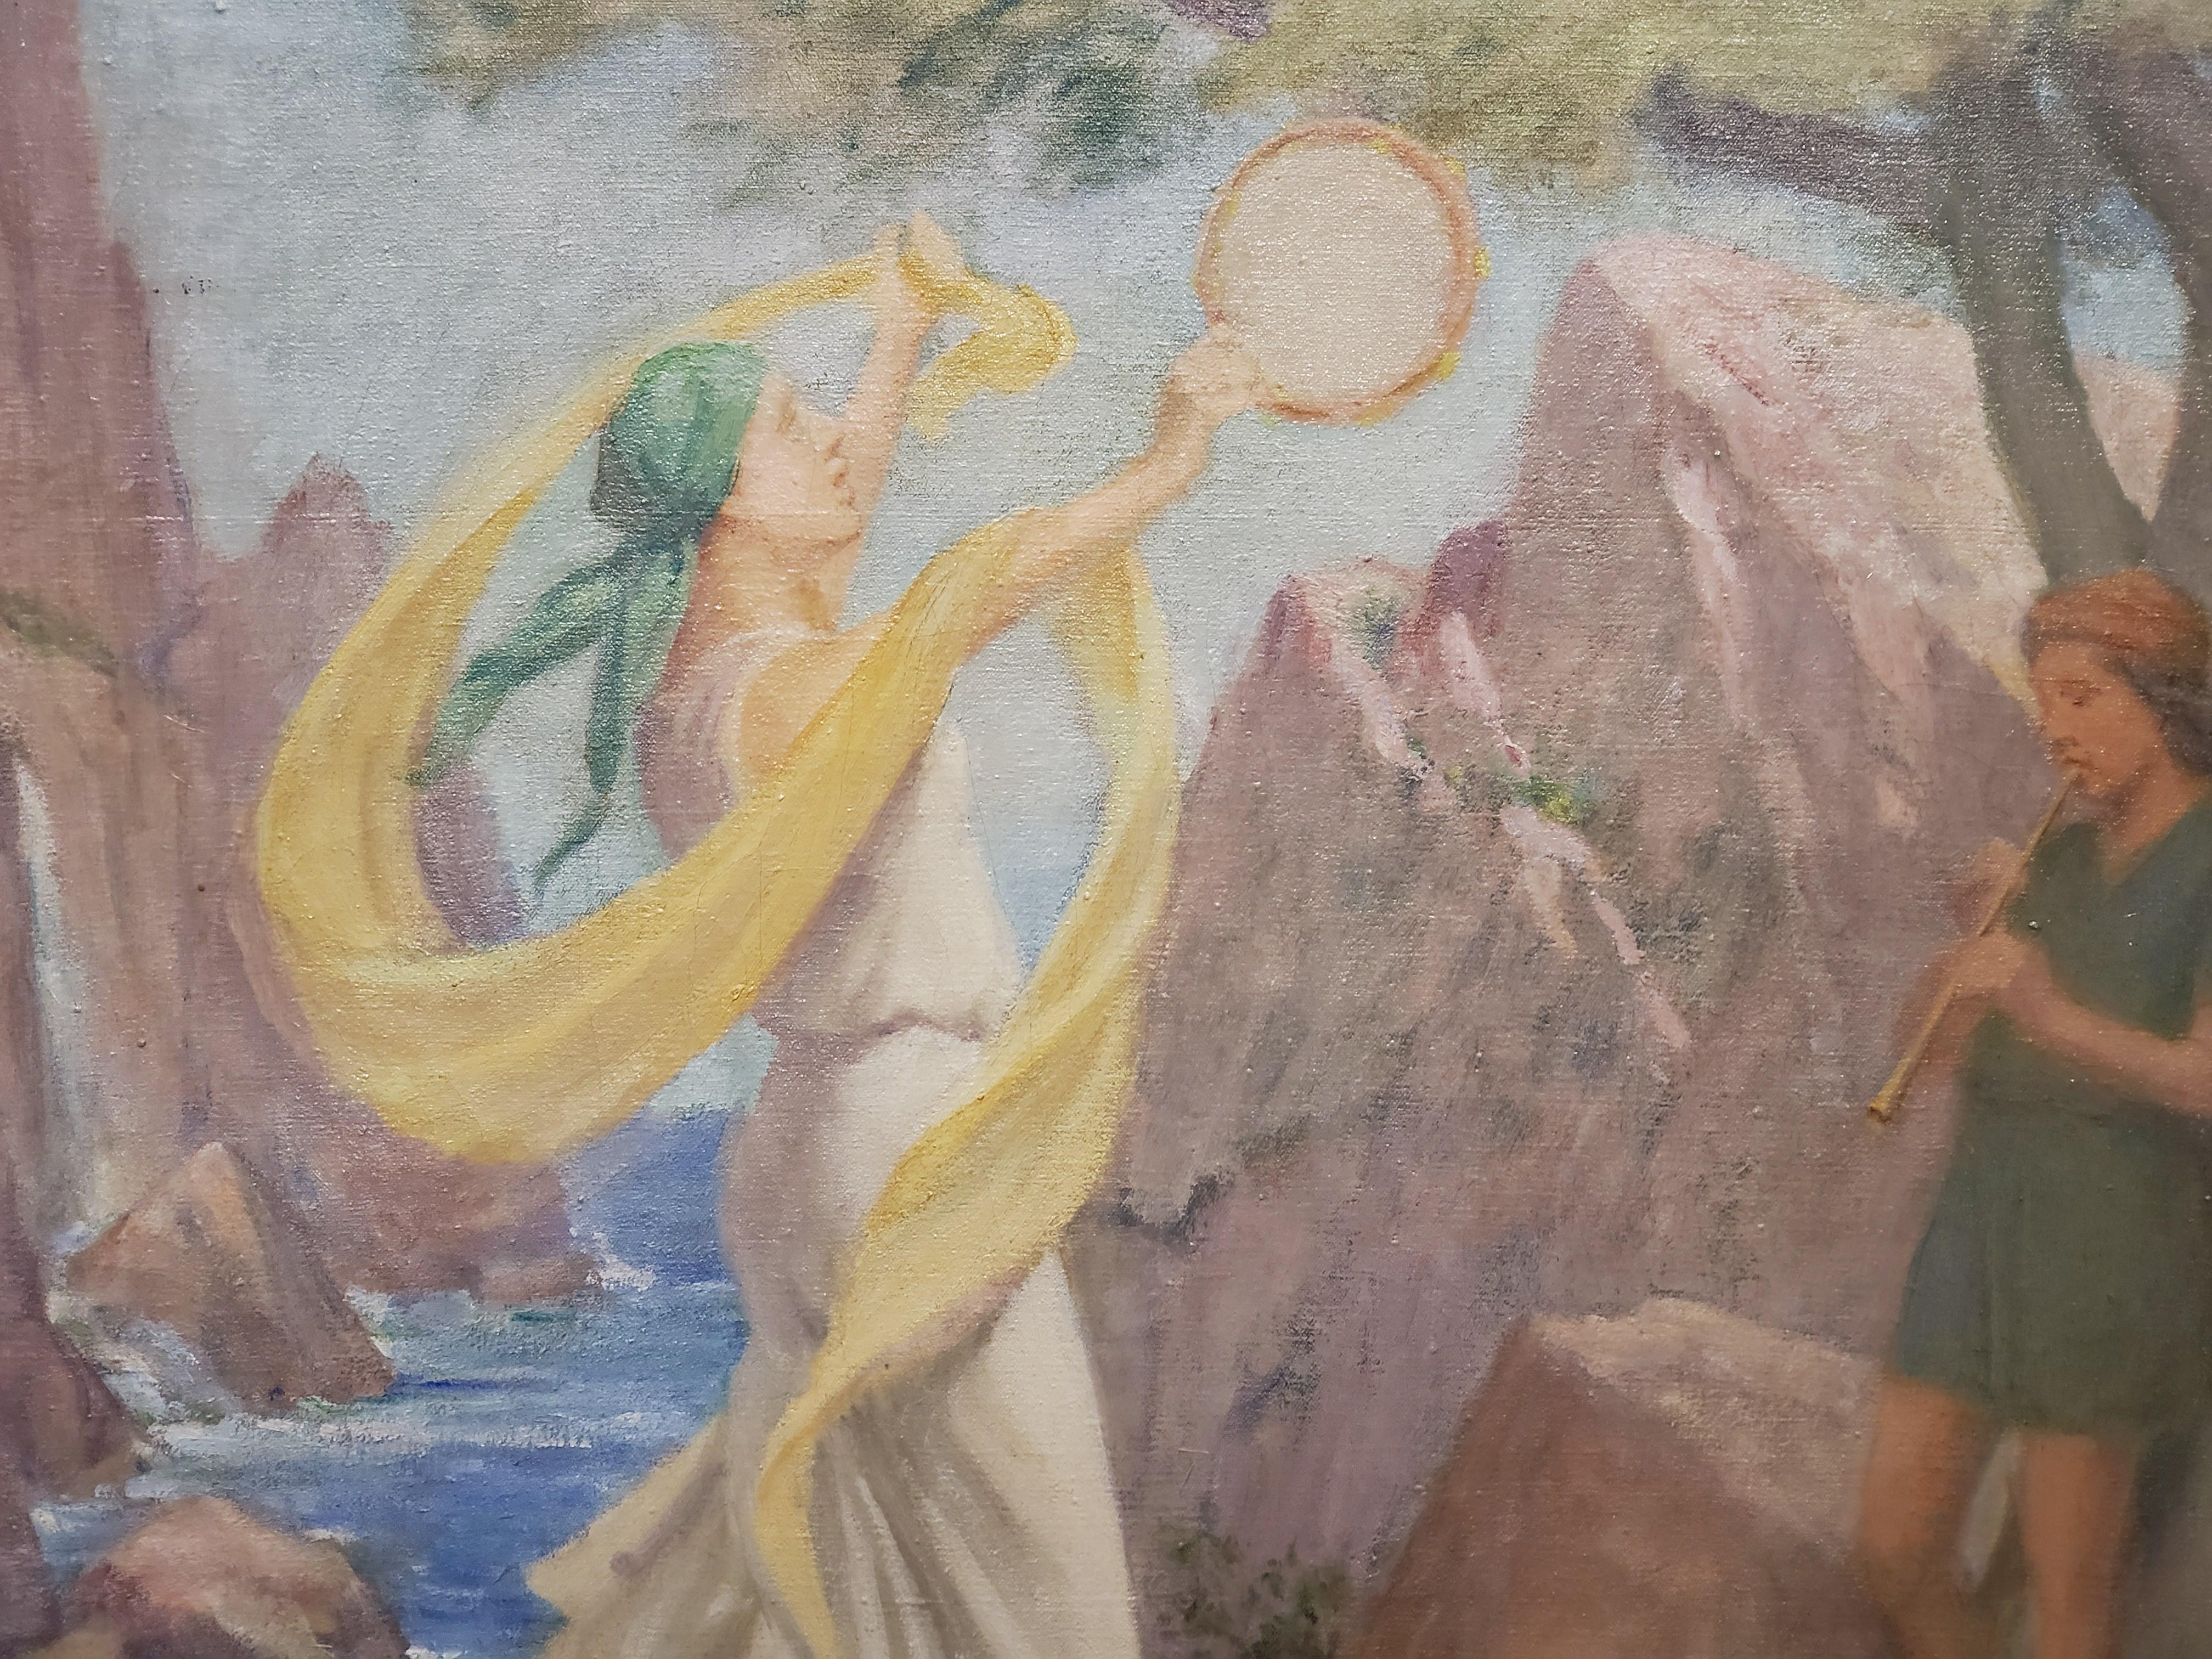 Dies ist ein ausgezeichnetes allegorisches Werk in angenehmen Pastellfarben von Charles E. Mills, einem amerikanischen Künstler, der zwischen 1856 und 1956 lebte. 

Das Gemälde zeigt zwei Musiker, die unter den Bäumen in der Nähe des Meeres in einer